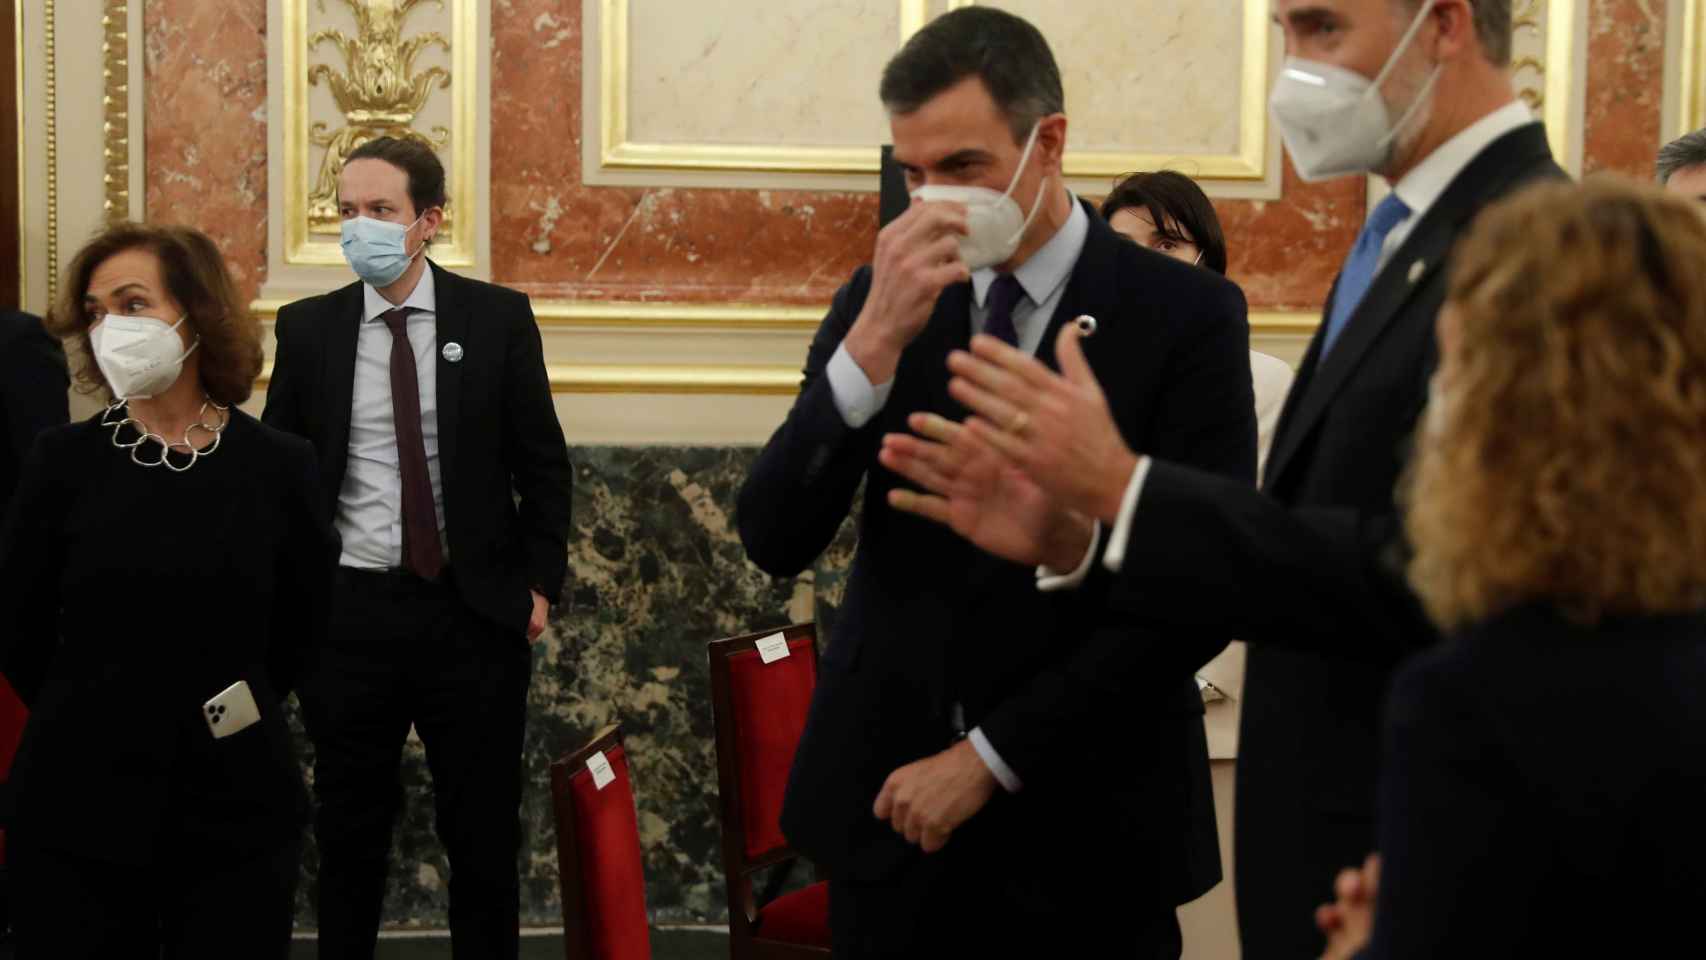 El Rey Felipe VI, entre Pedro Sánchez y Meritxell Batet, junto a Carmen Calvo y, de fondo, Pablo Iglesias con las manos en los bolsillos.